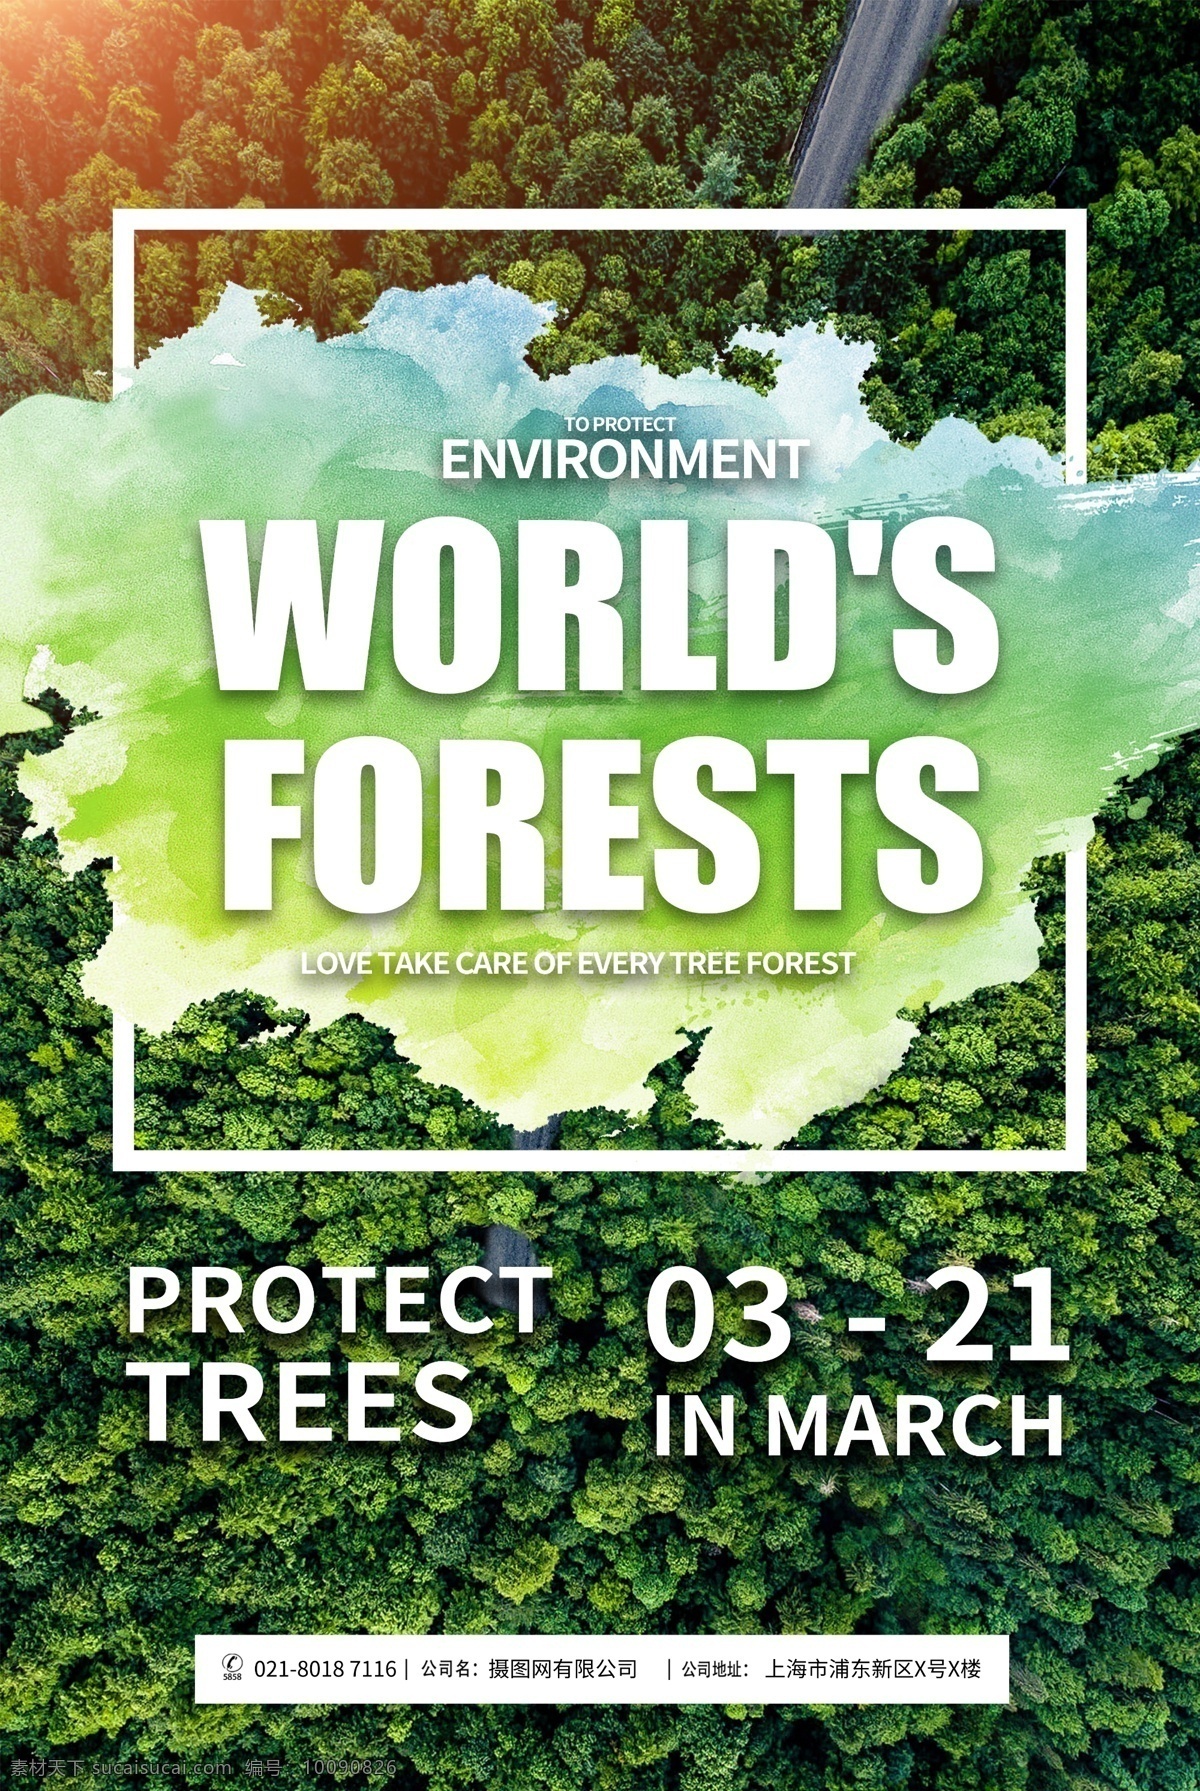 世界 森林 日 纯 英文 宣传海报 世界森林 树木 树林 爱护树木 保护森林 公益 公益海报 宣传 公益宣传 全英文 纯英文 英文海报 资源 森林资源